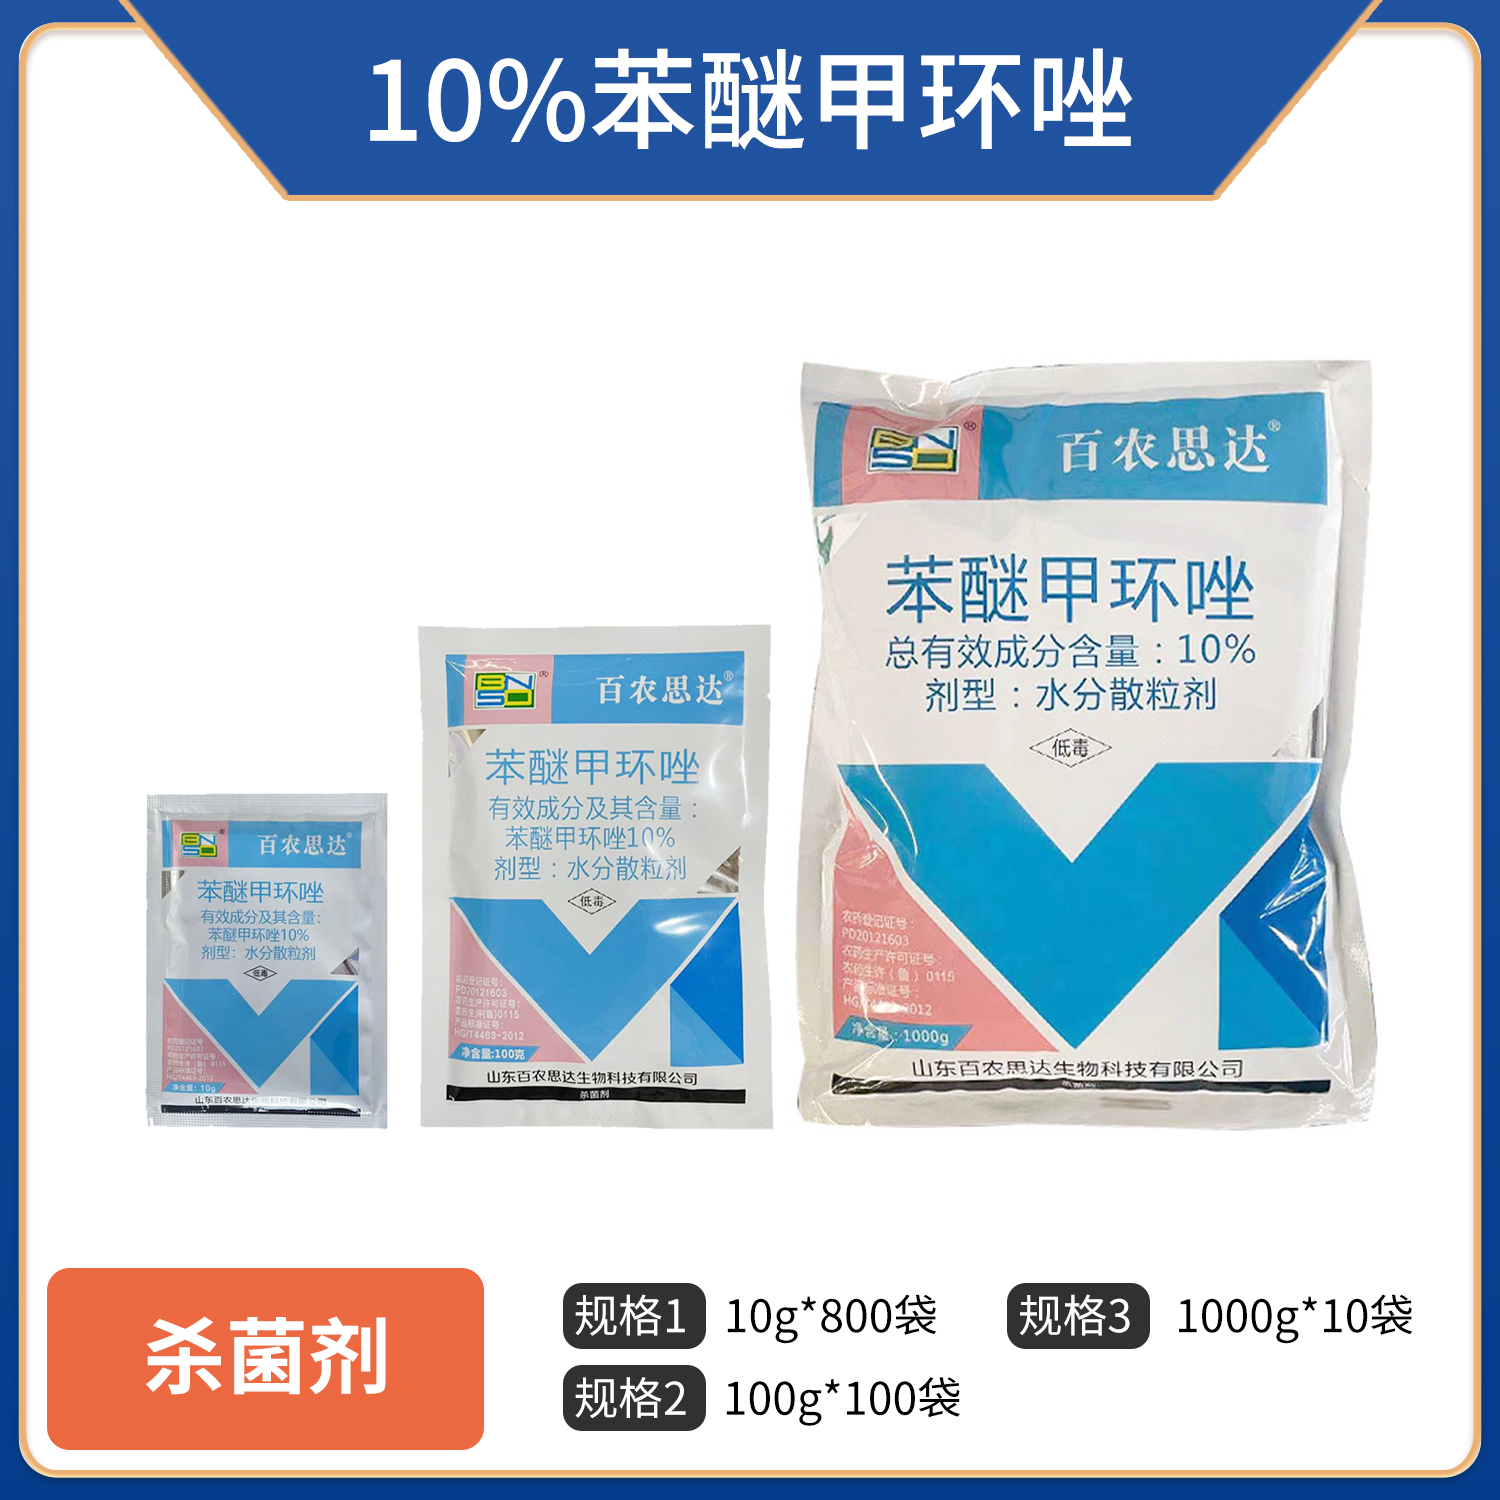 百农思达-10%苯醚甲环唑-1000g-BN